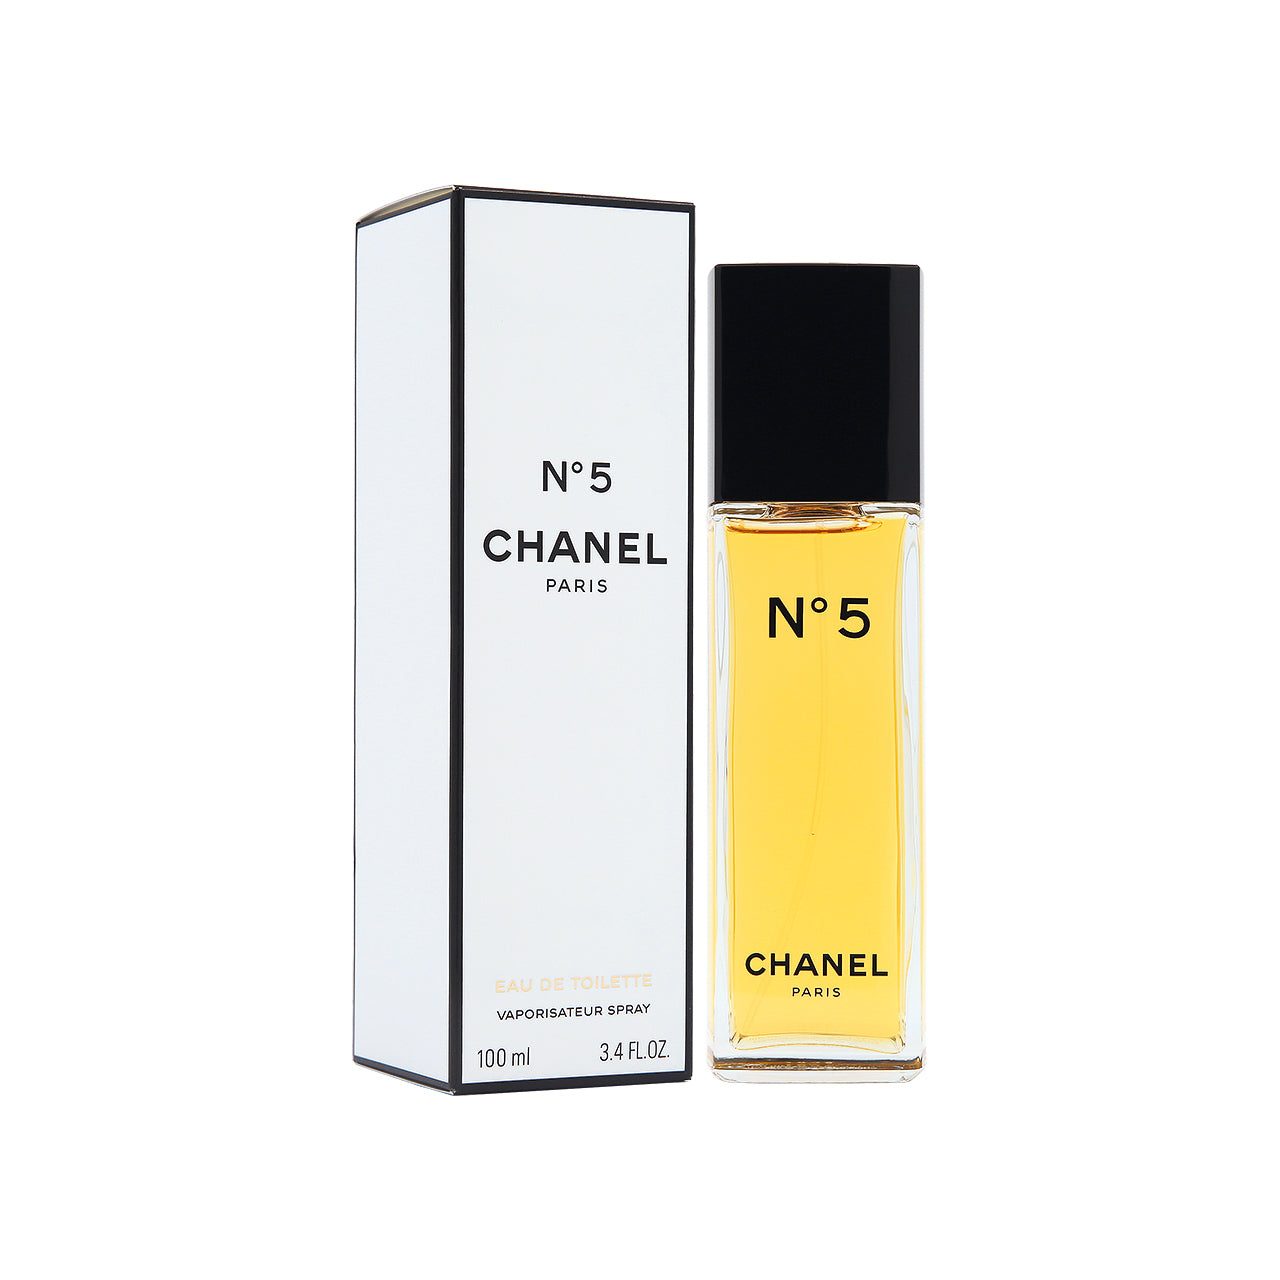 CHANEL (N°5) Eau de Parfum Spray (100ml)